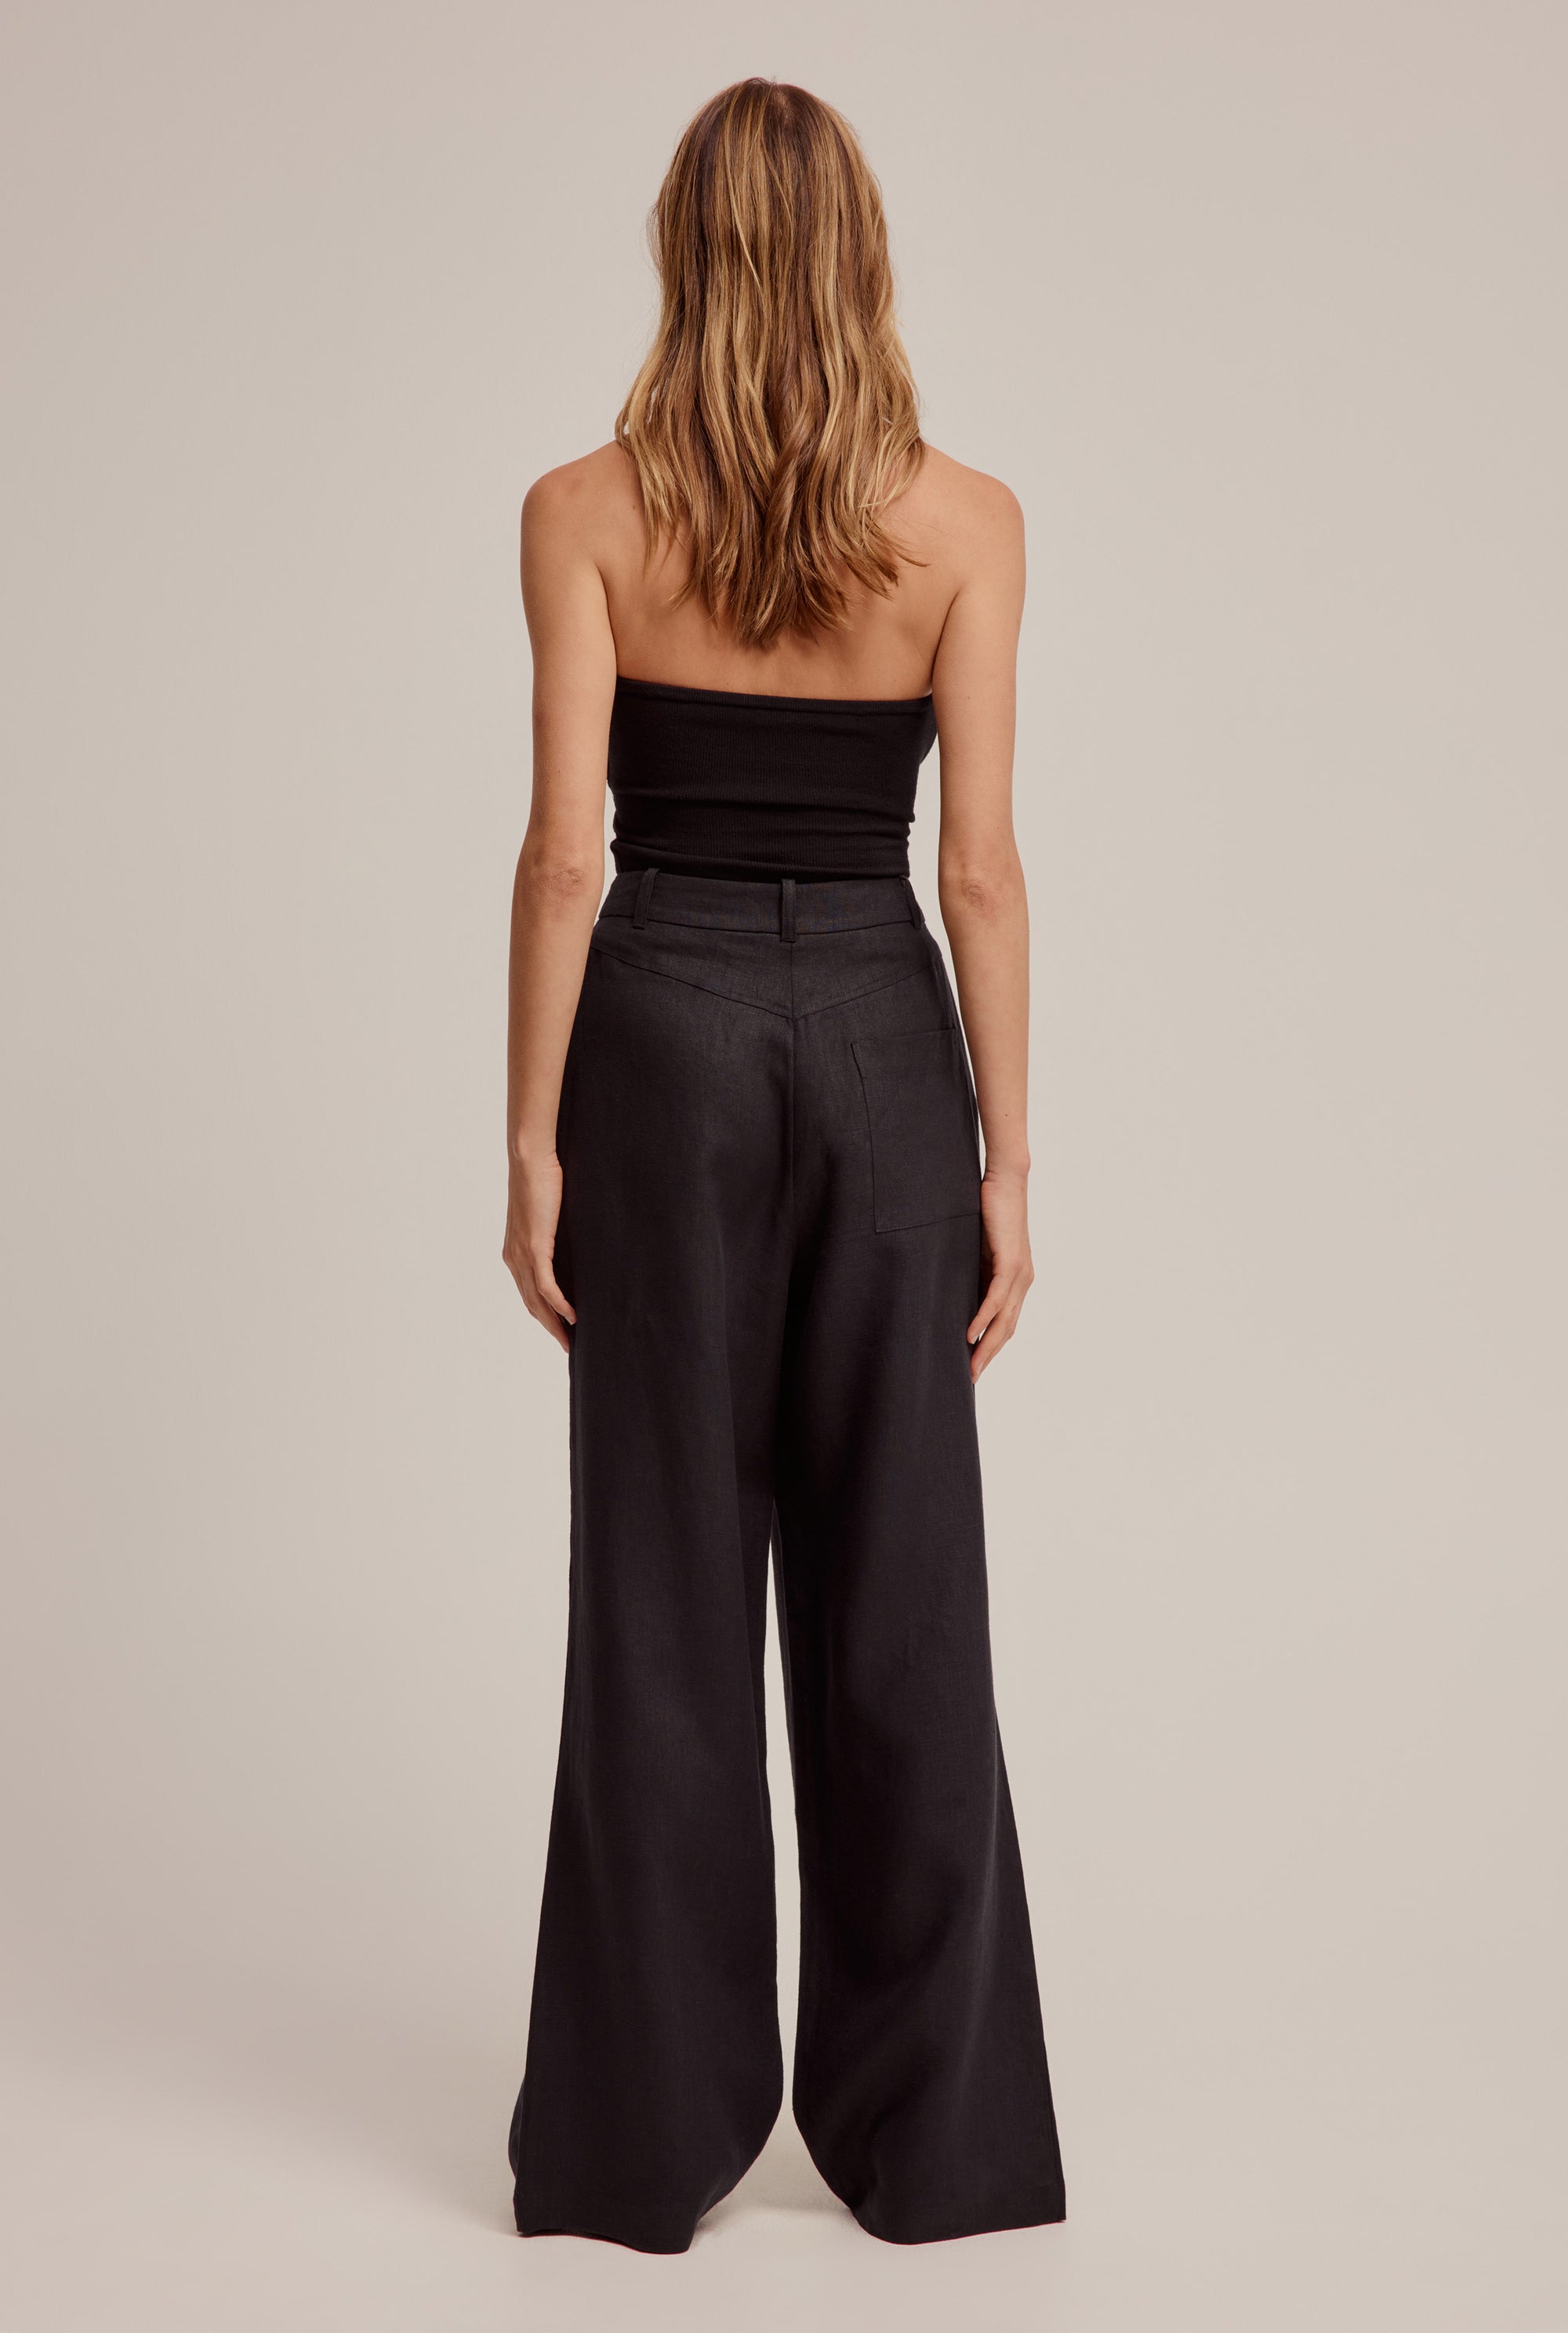 Venroy - Womens Womens Fixed Waist Linen Trouser in Black